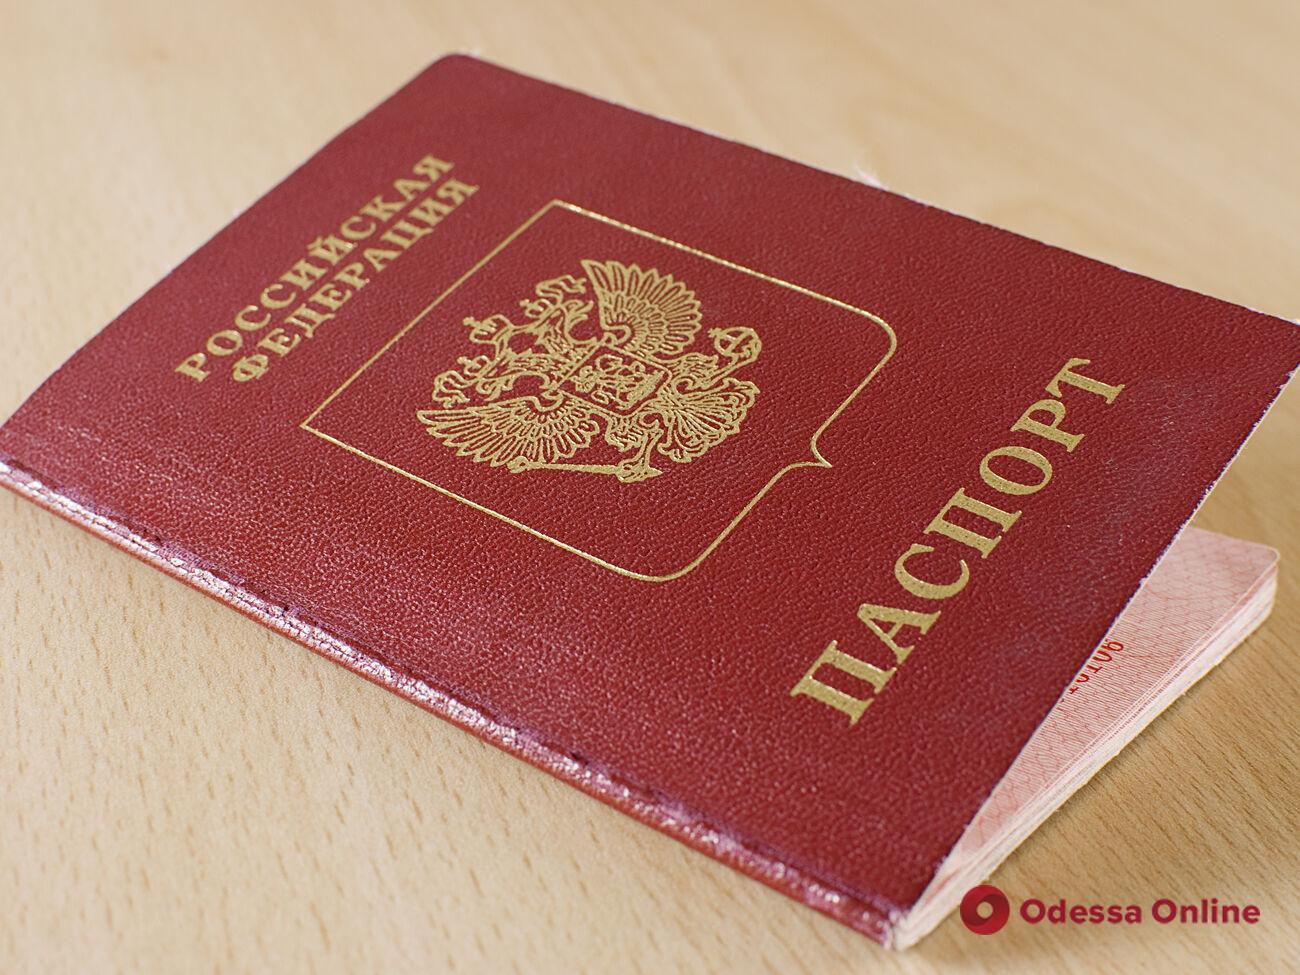 На оккупированной территории рашисты заставляют пенсионеров получать российские паспорта